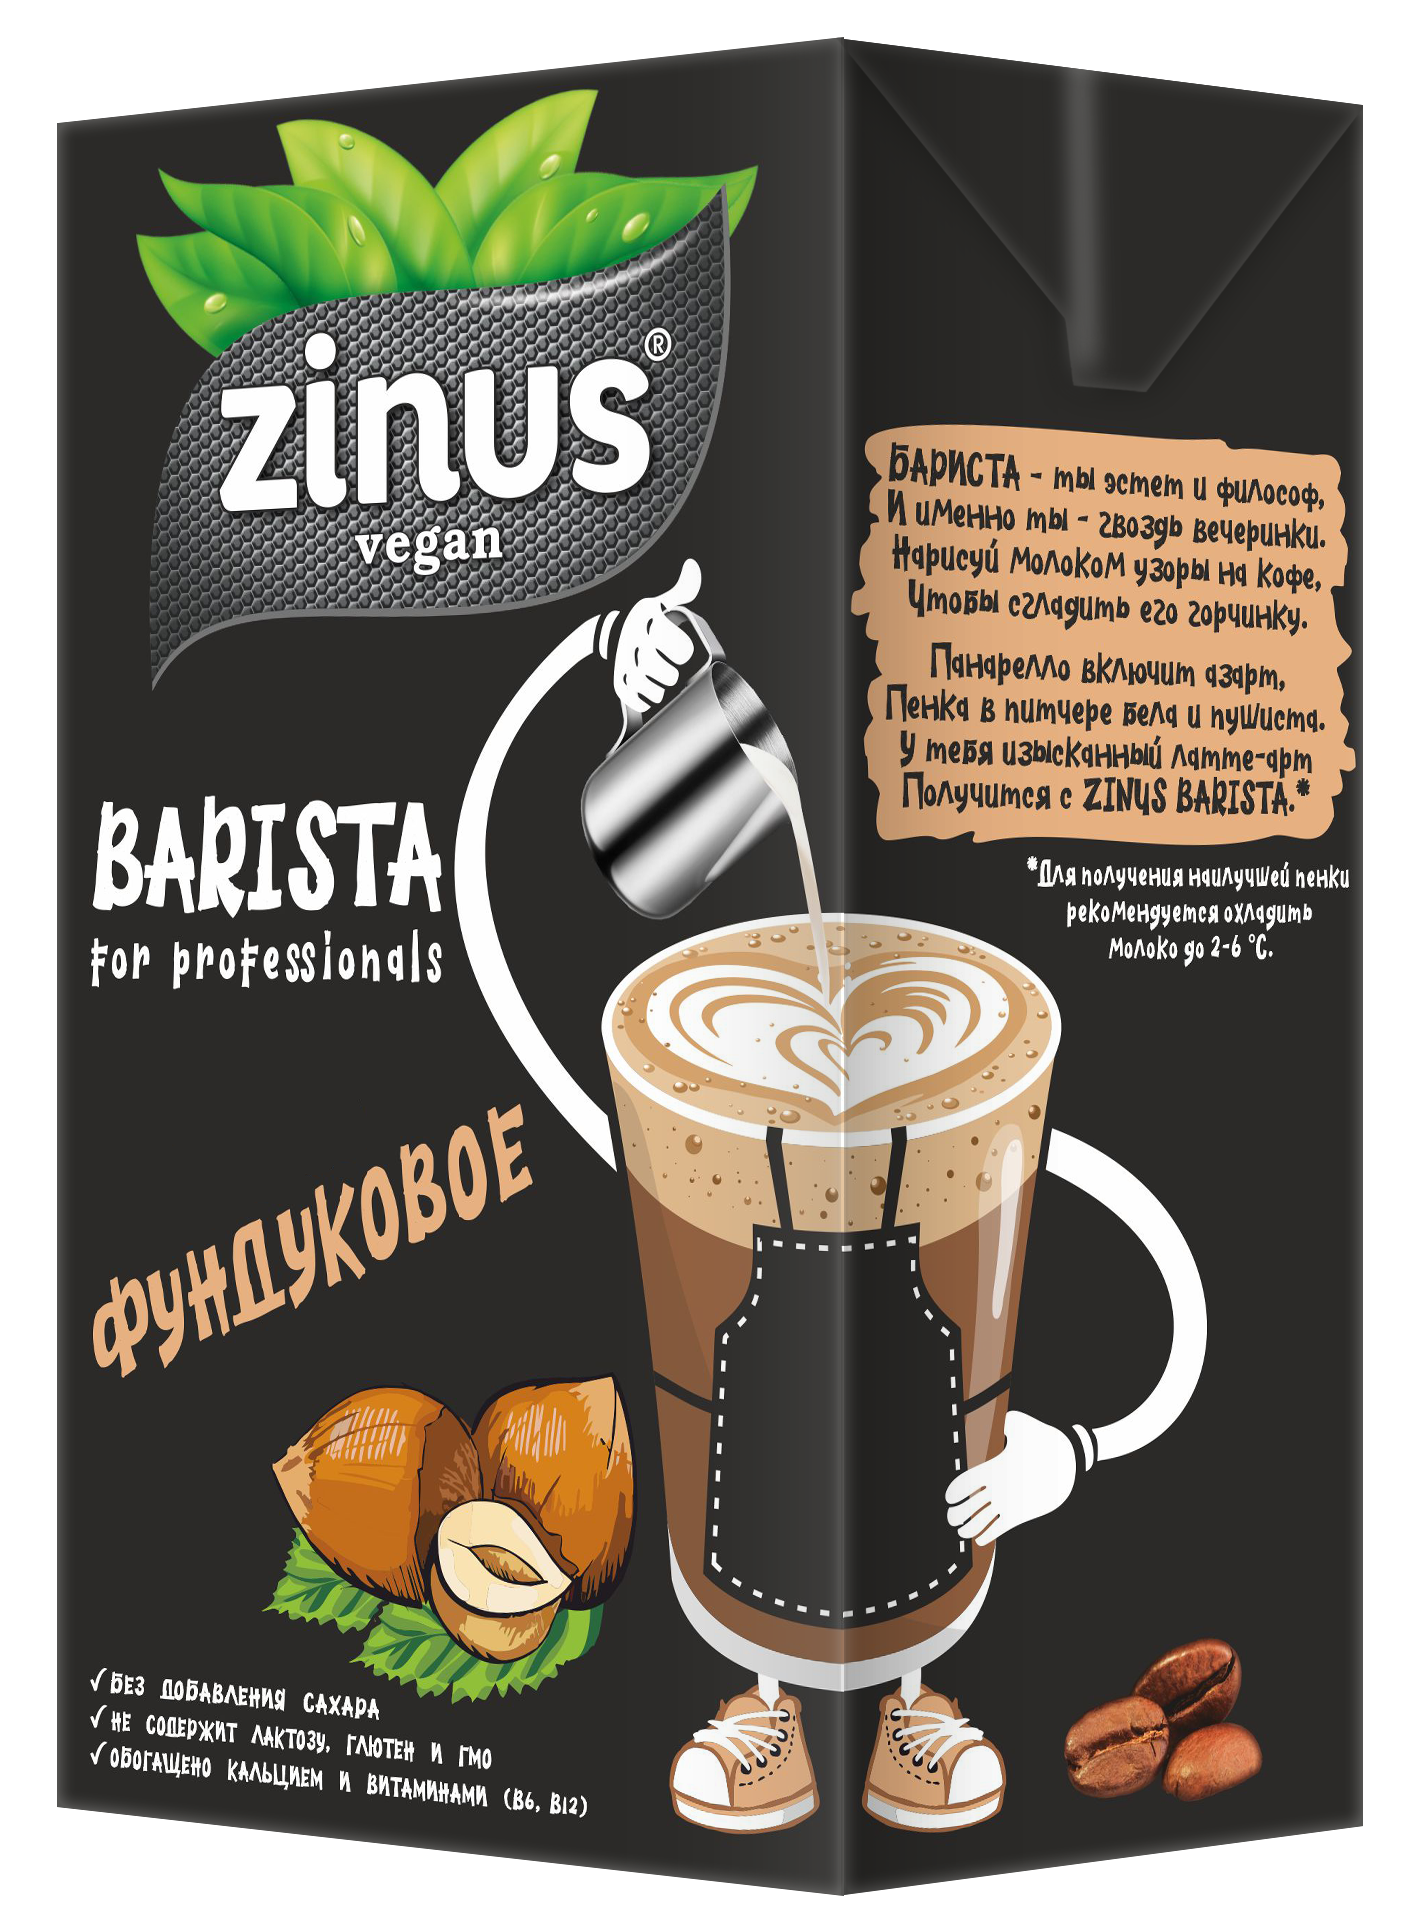 Продукт на растительном сырье Zinus Vegan Barista Фундуковое 2,0%, 1 л